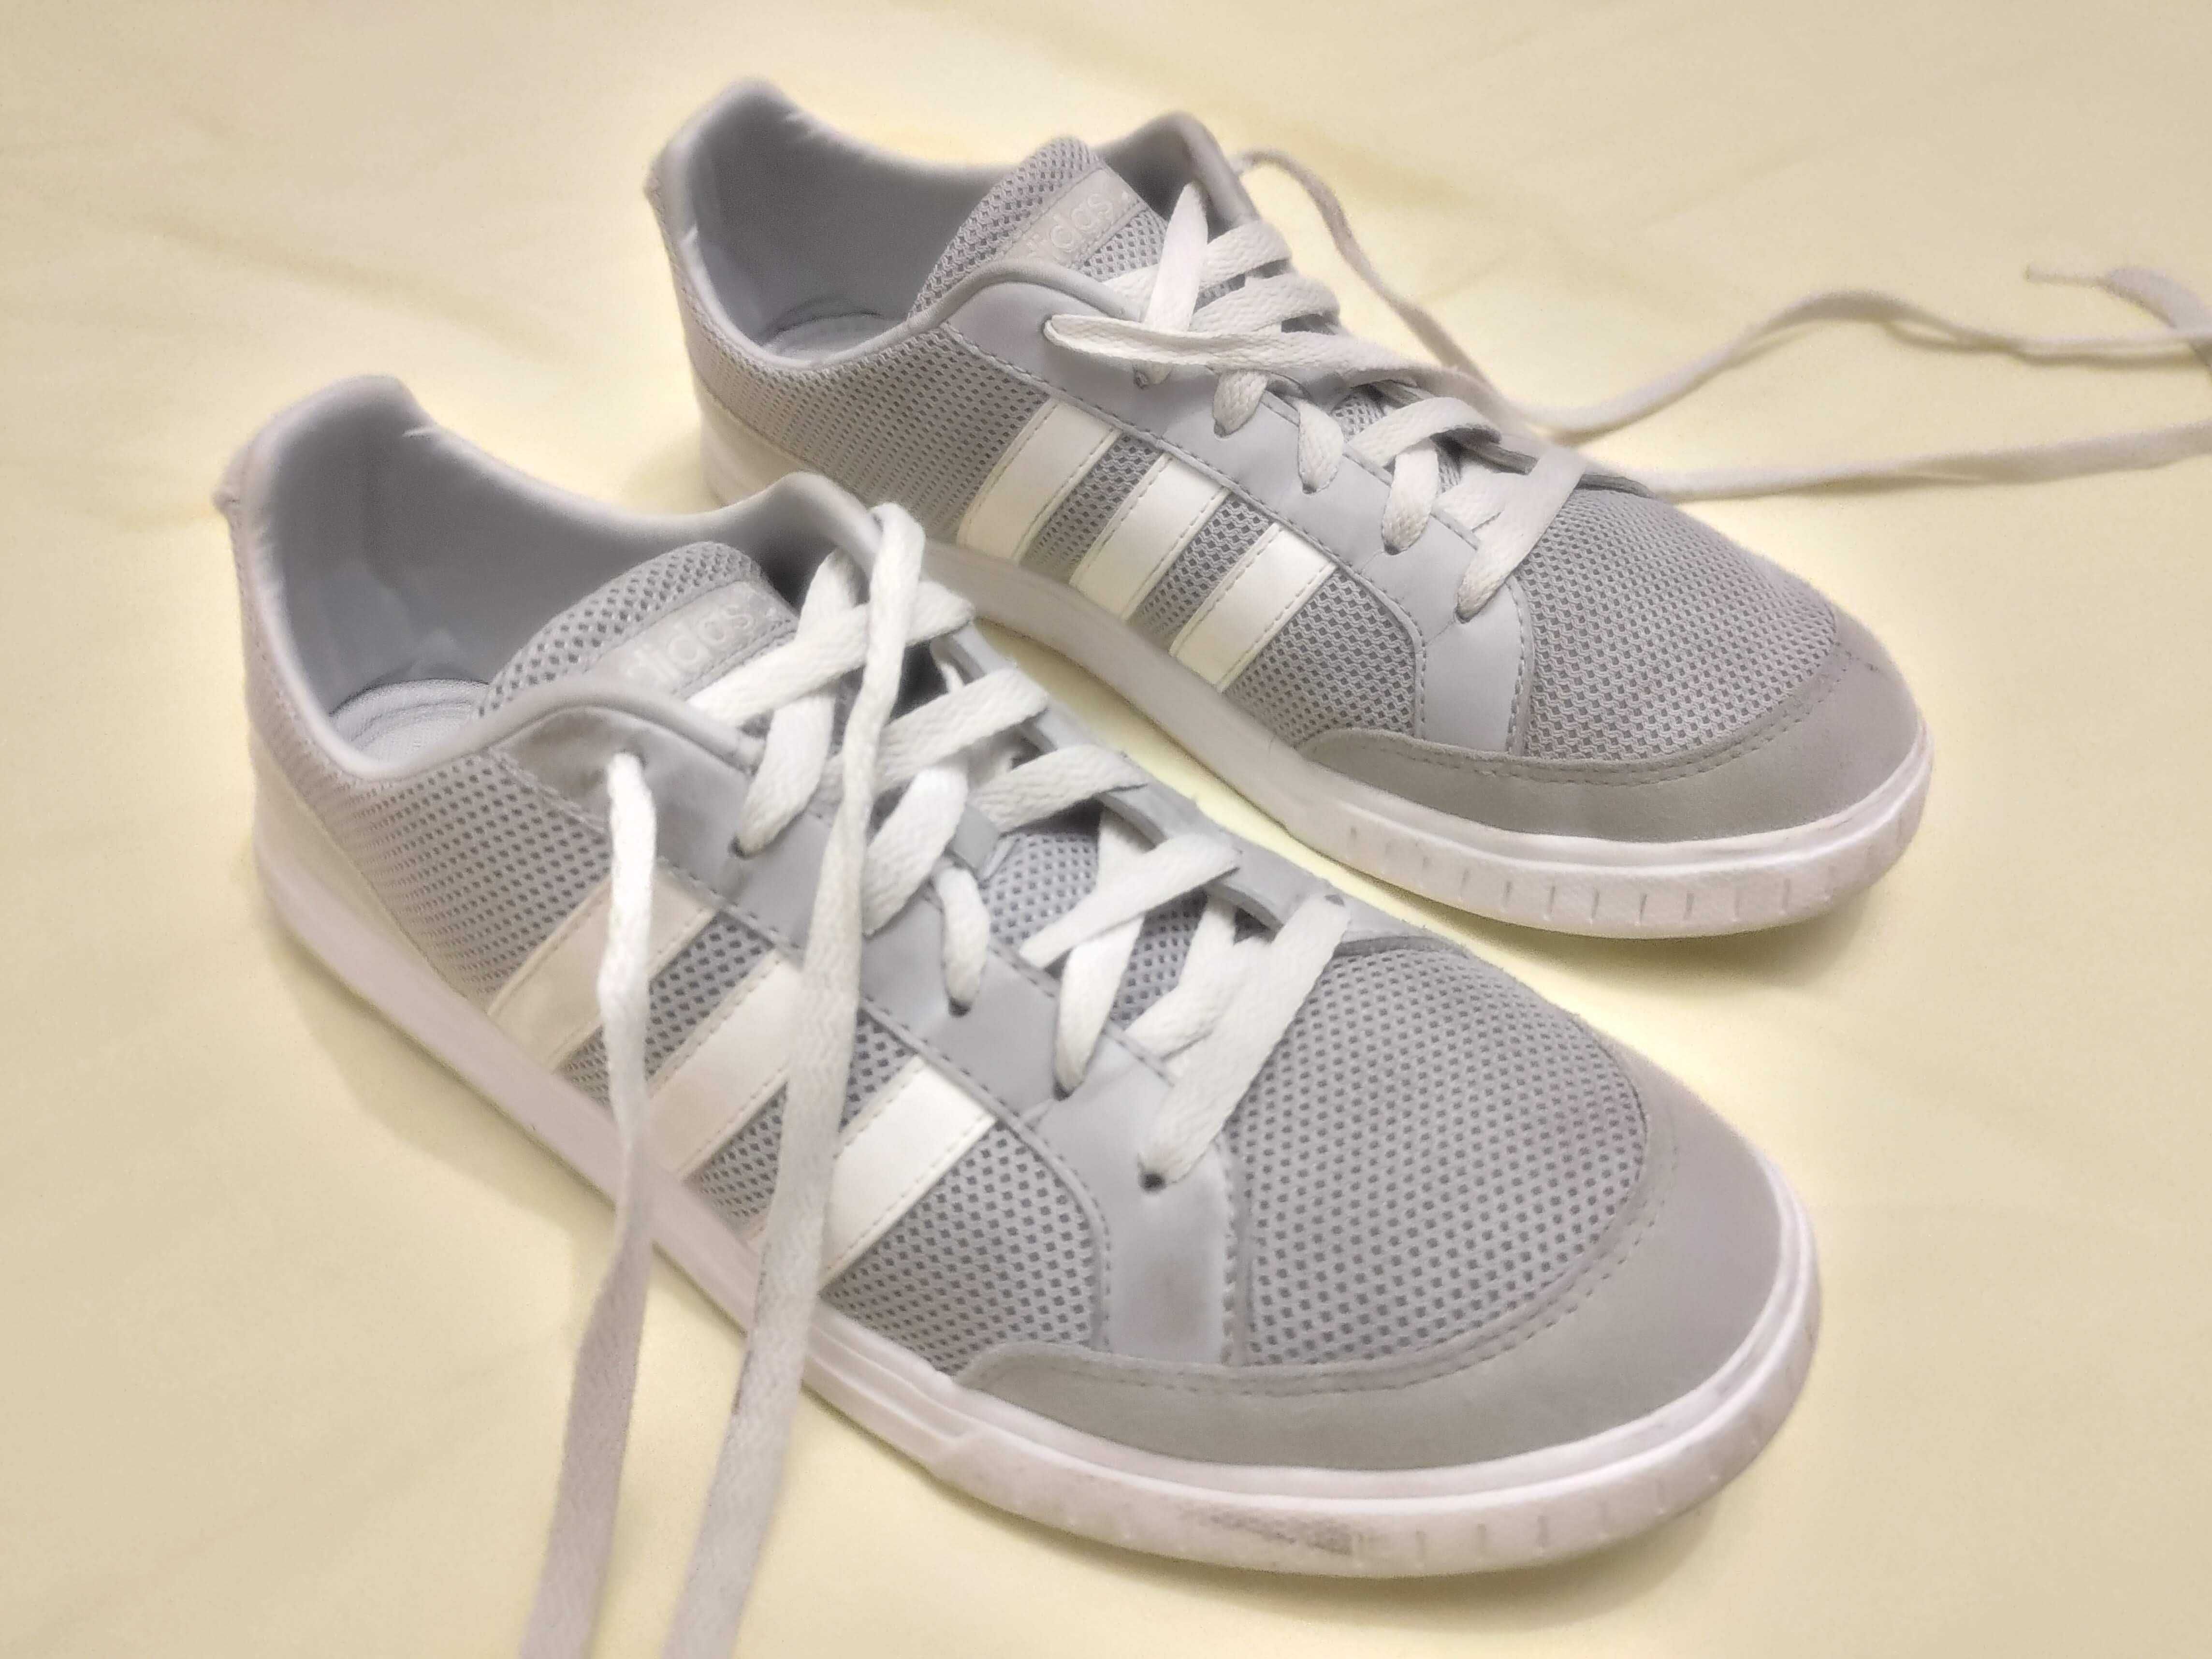 Adidas – Ténis de Desporto ou Casual – Cinzento e Branco (Original)